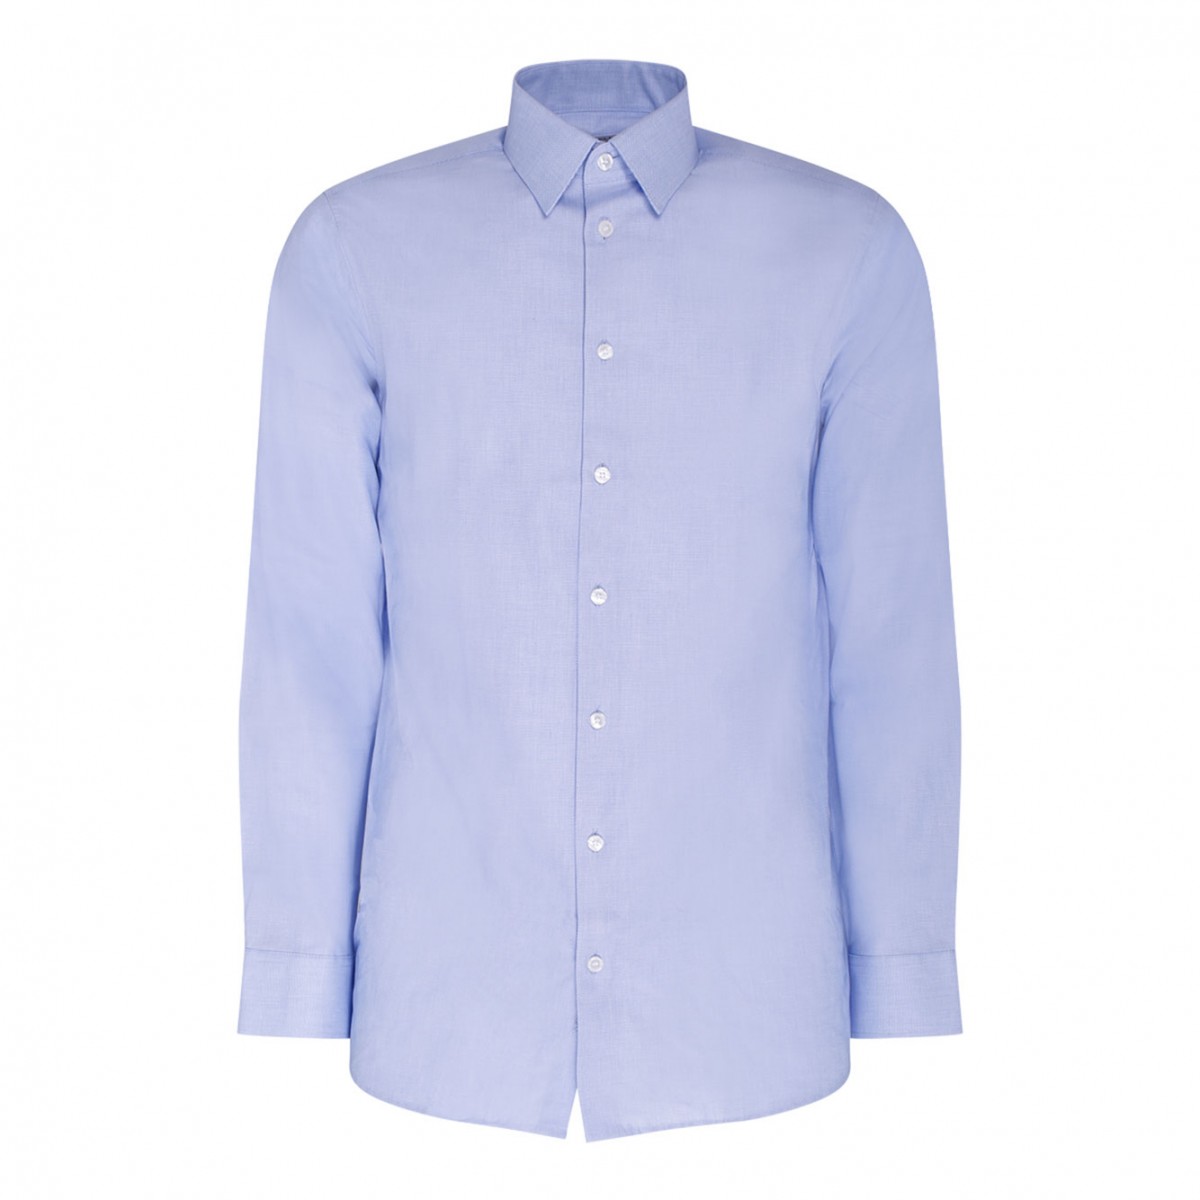 Selected Light Blue Cotton Texture Shirt. 